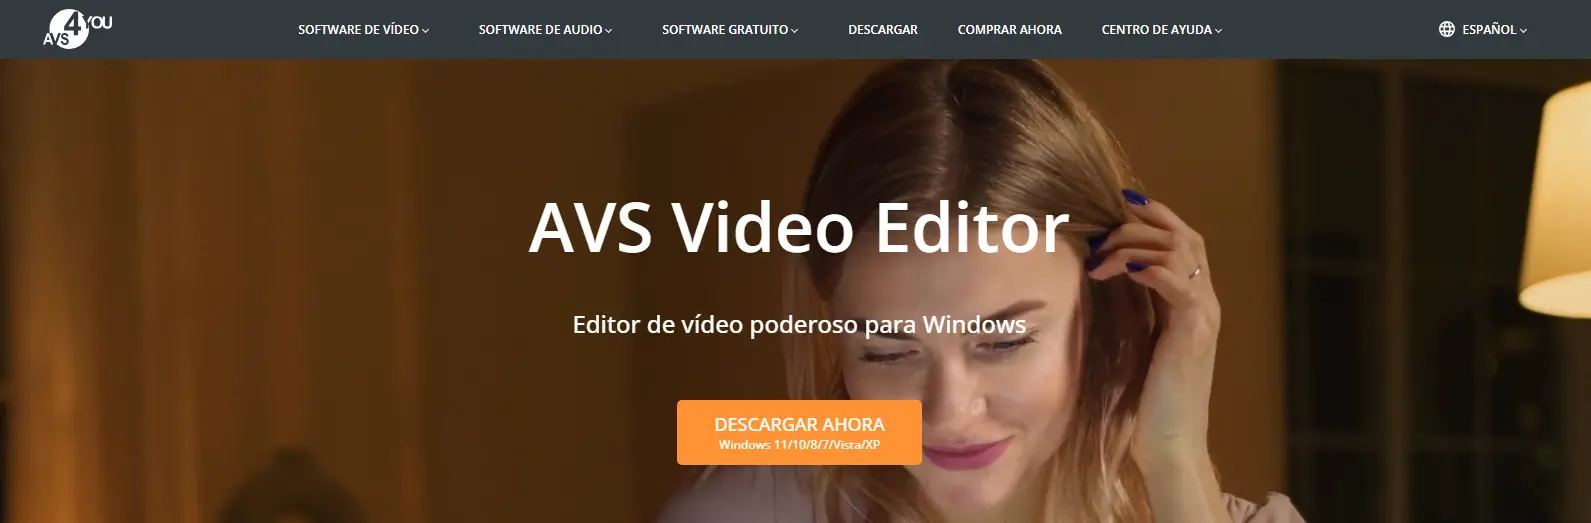 AVS Video Editor Potente software de edición de video en línea